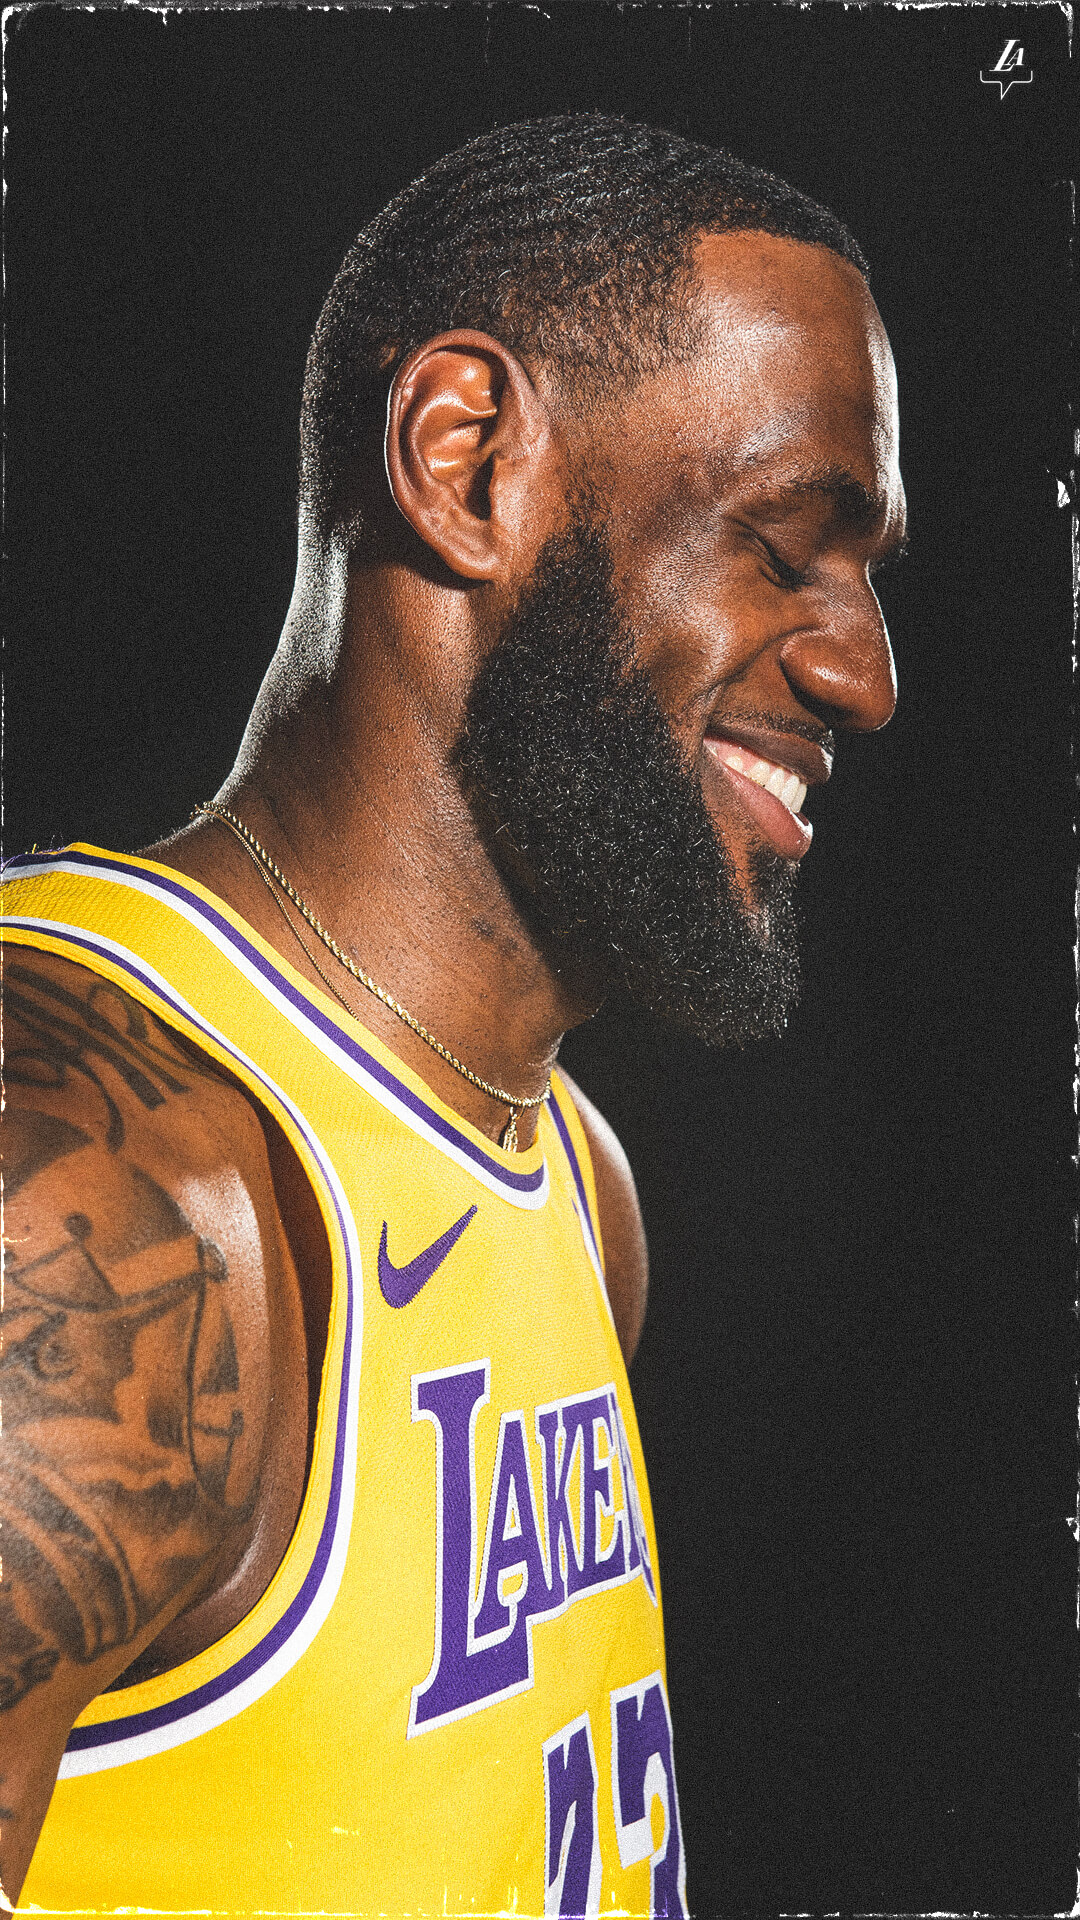 36+] LeBron James 2020 Wallpapers - WallpaperSafari